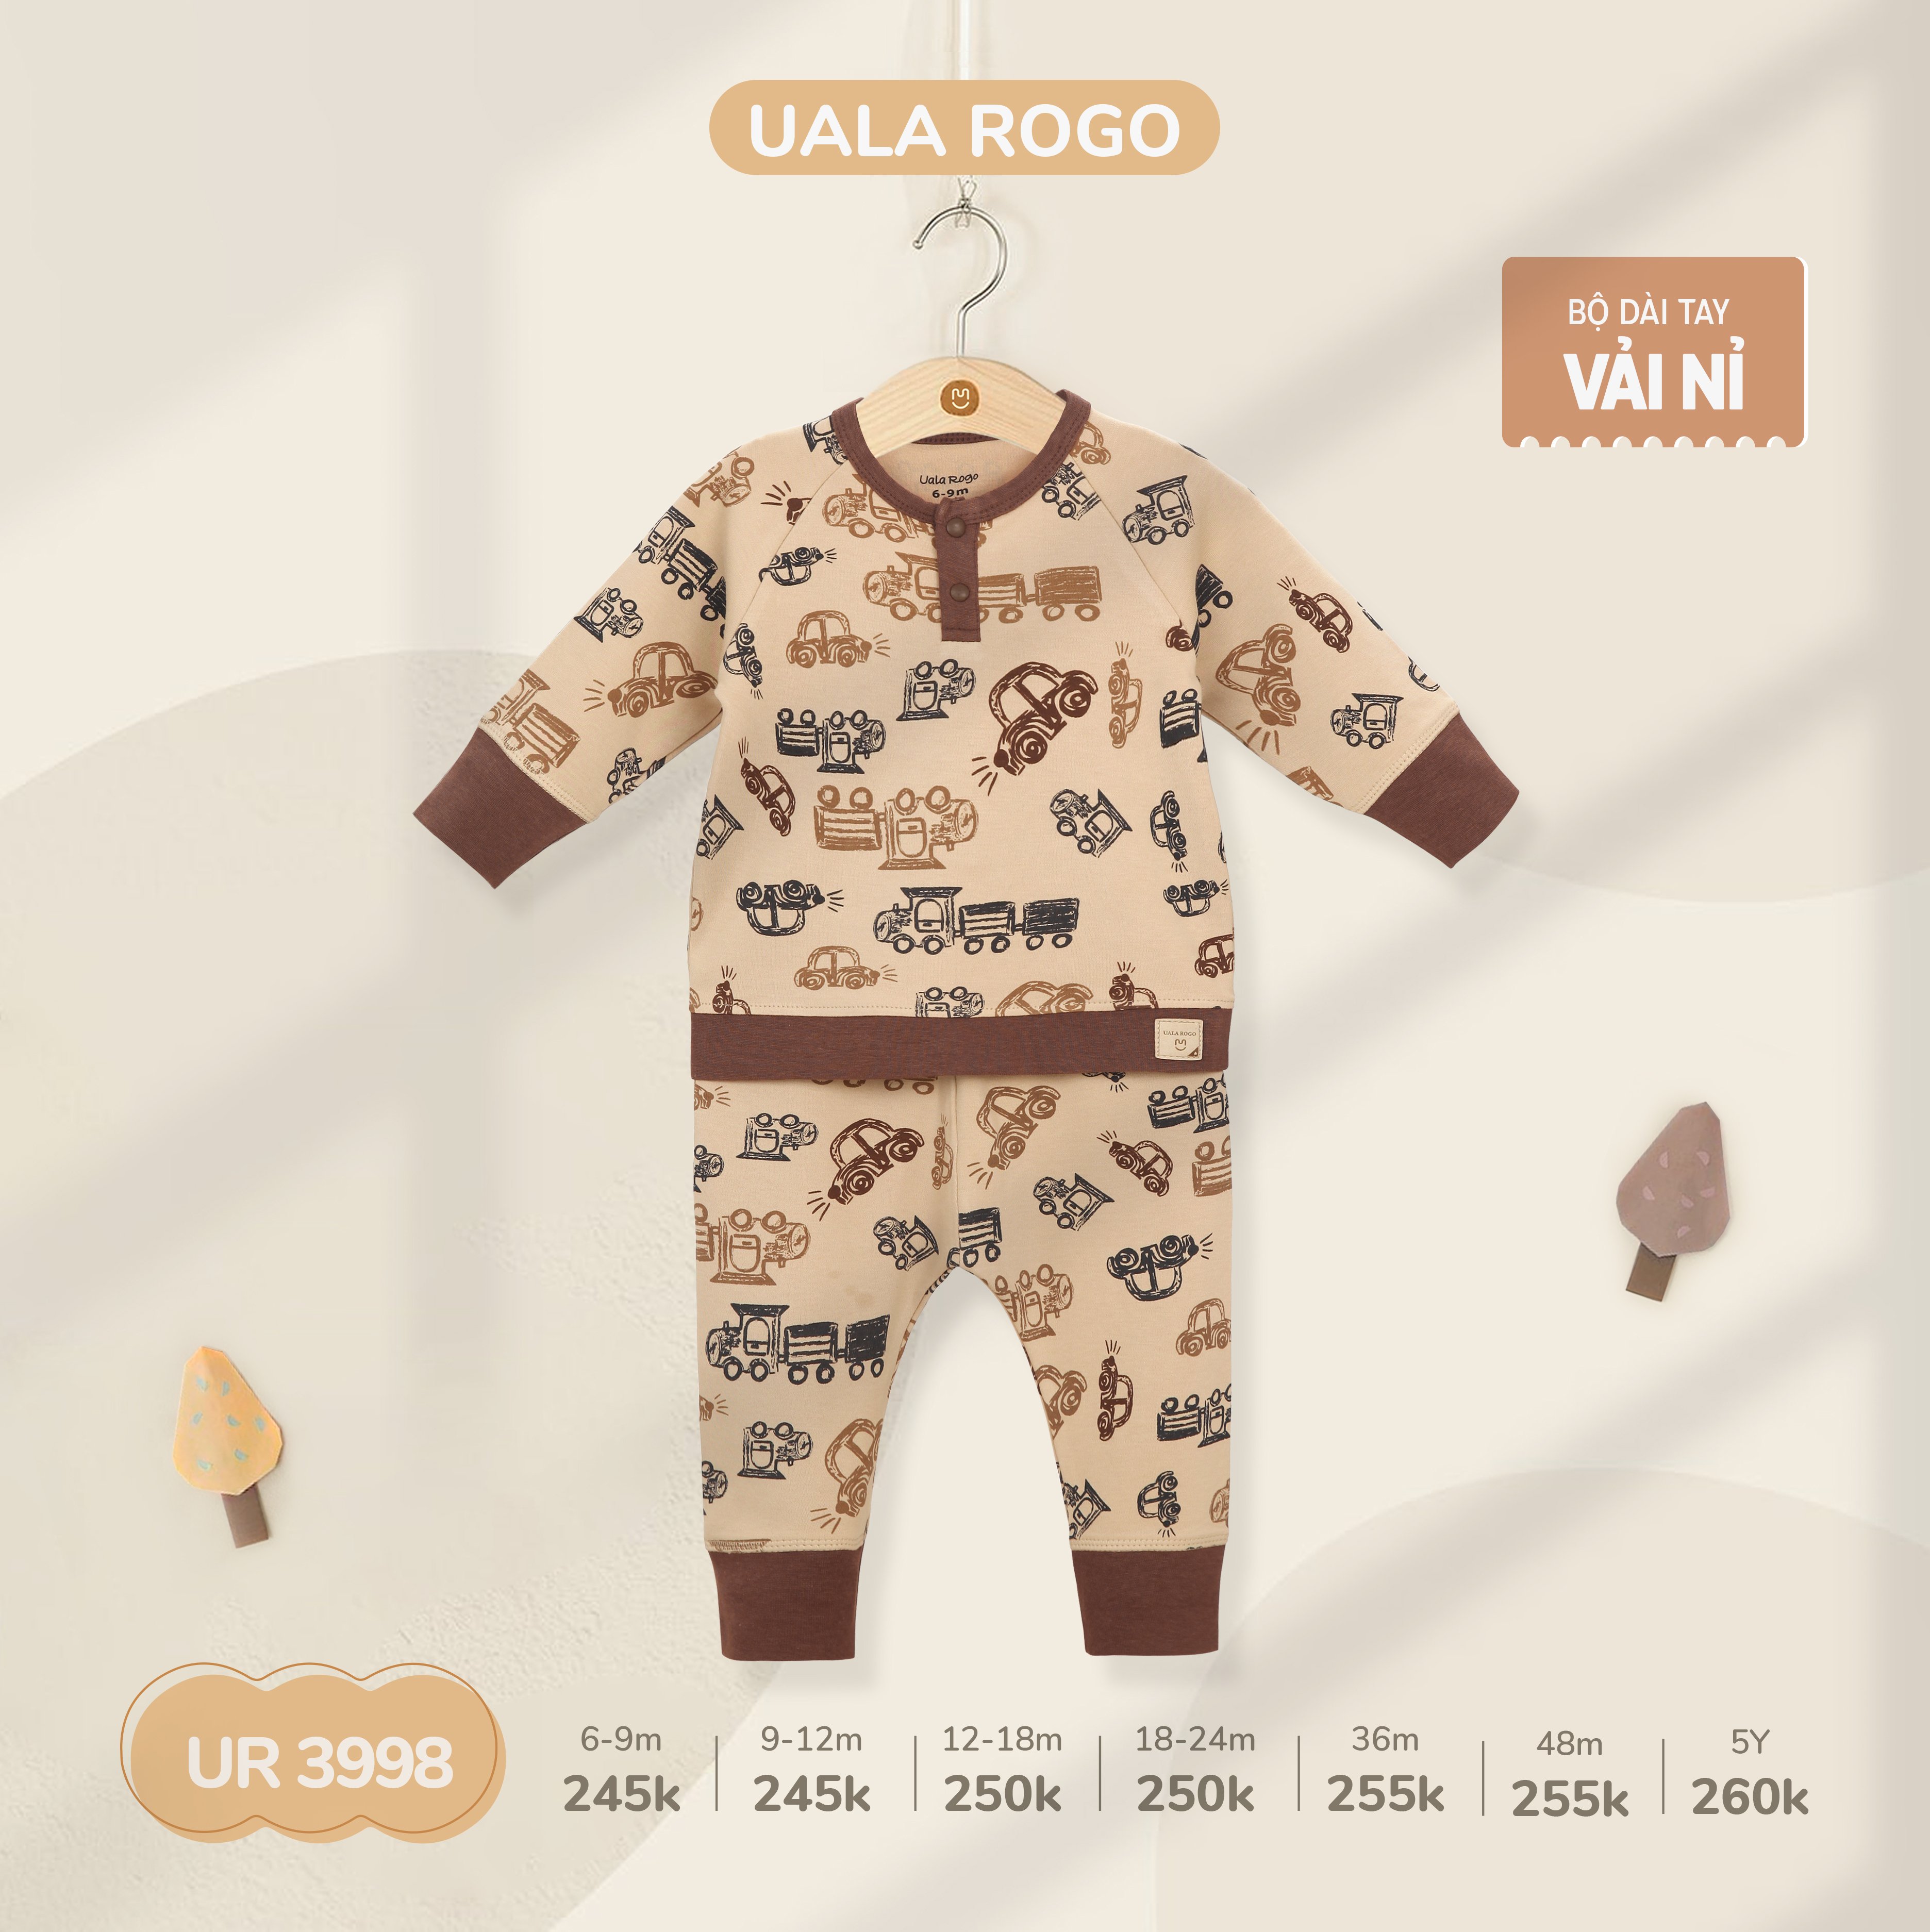 Bộ QA dài tay UalaRogo chất liệu nỉ họa tiết màu sắc trung tính cho bé 6 tháng - 5 tuổi